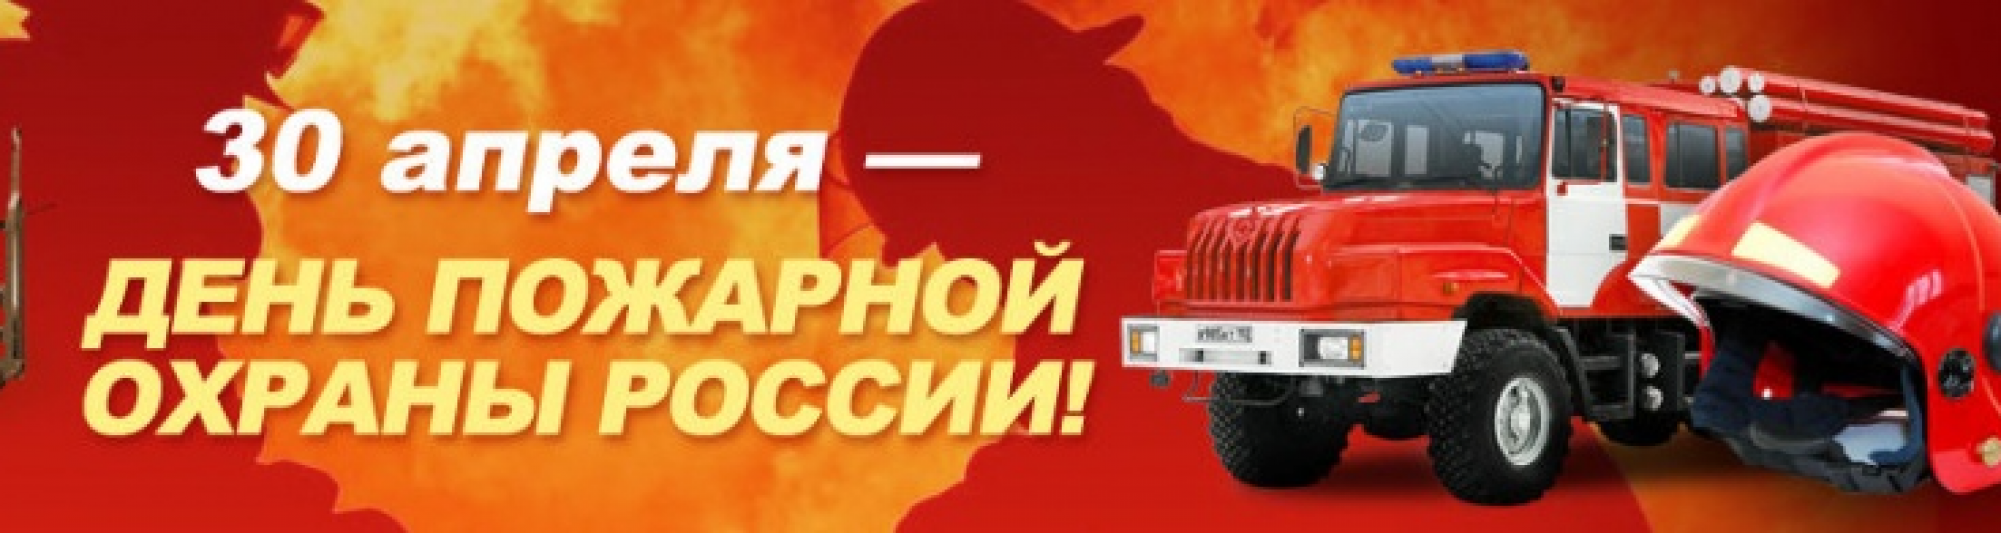 Картинка 375 лет пожарной охране. 30 Апреля день пожарной охраны России. С днем пожарного. С праздником пожарной охраны. С днем пожарной охраны 30 апреля.